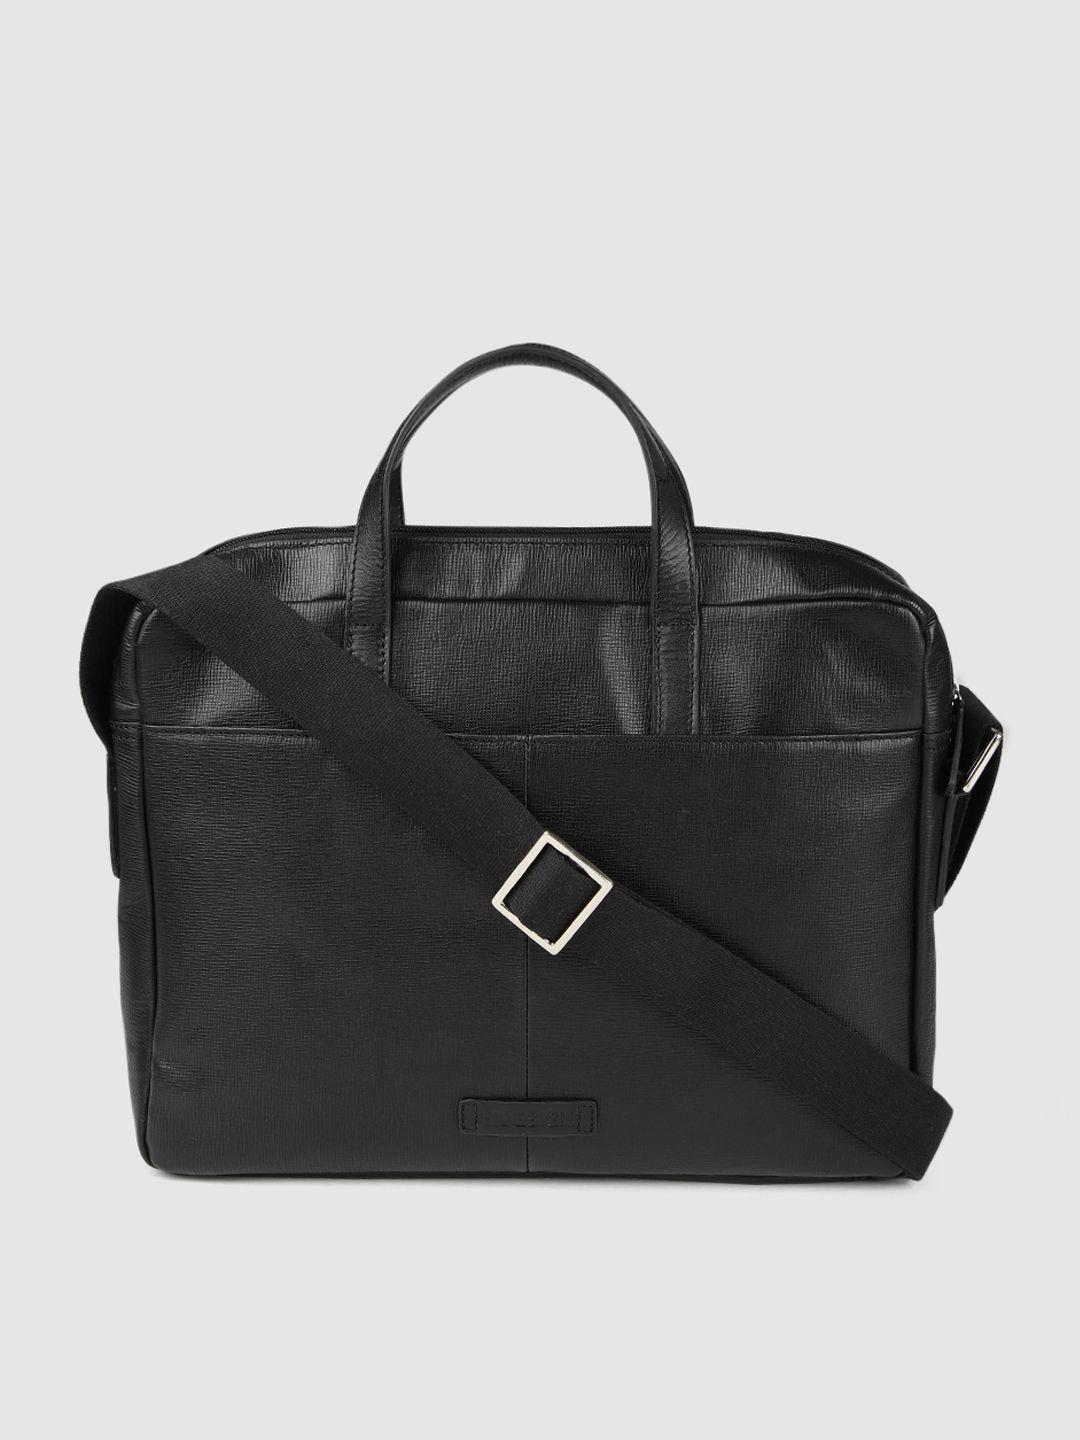 hidesign men black solid leather messenger bag